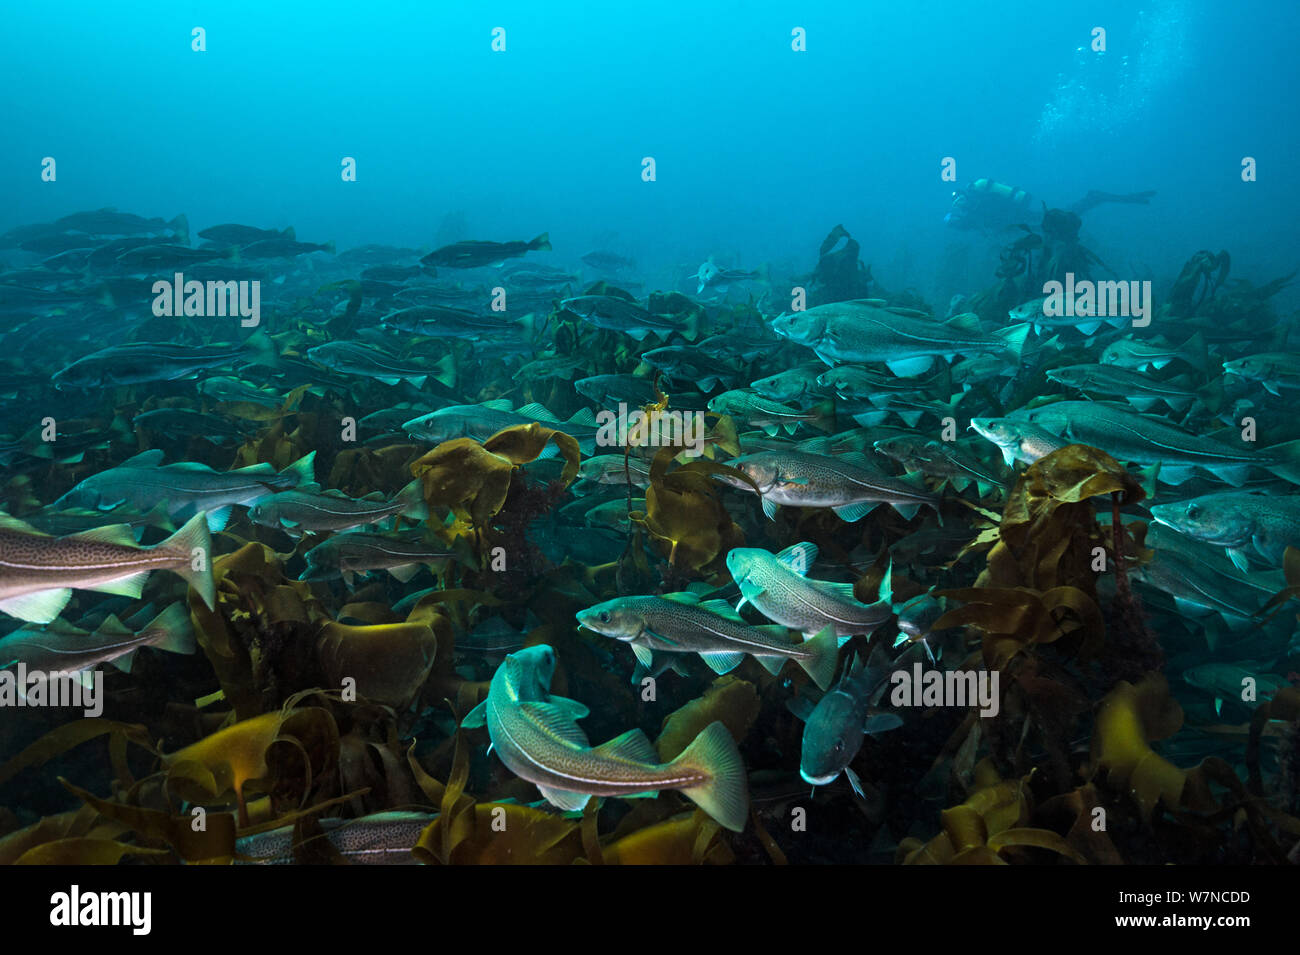 Un subacqueo nuota con una aggregazione di merluzzo bianco (Gadus morhua) su una foresta di kelp. Questi cod erano riuniti in primavera della costa nord di Islanda per deporre le uova. Thorshofn, Islanda. Oceano Atlantico settentrionale. Aprile 2012 Foto Stock